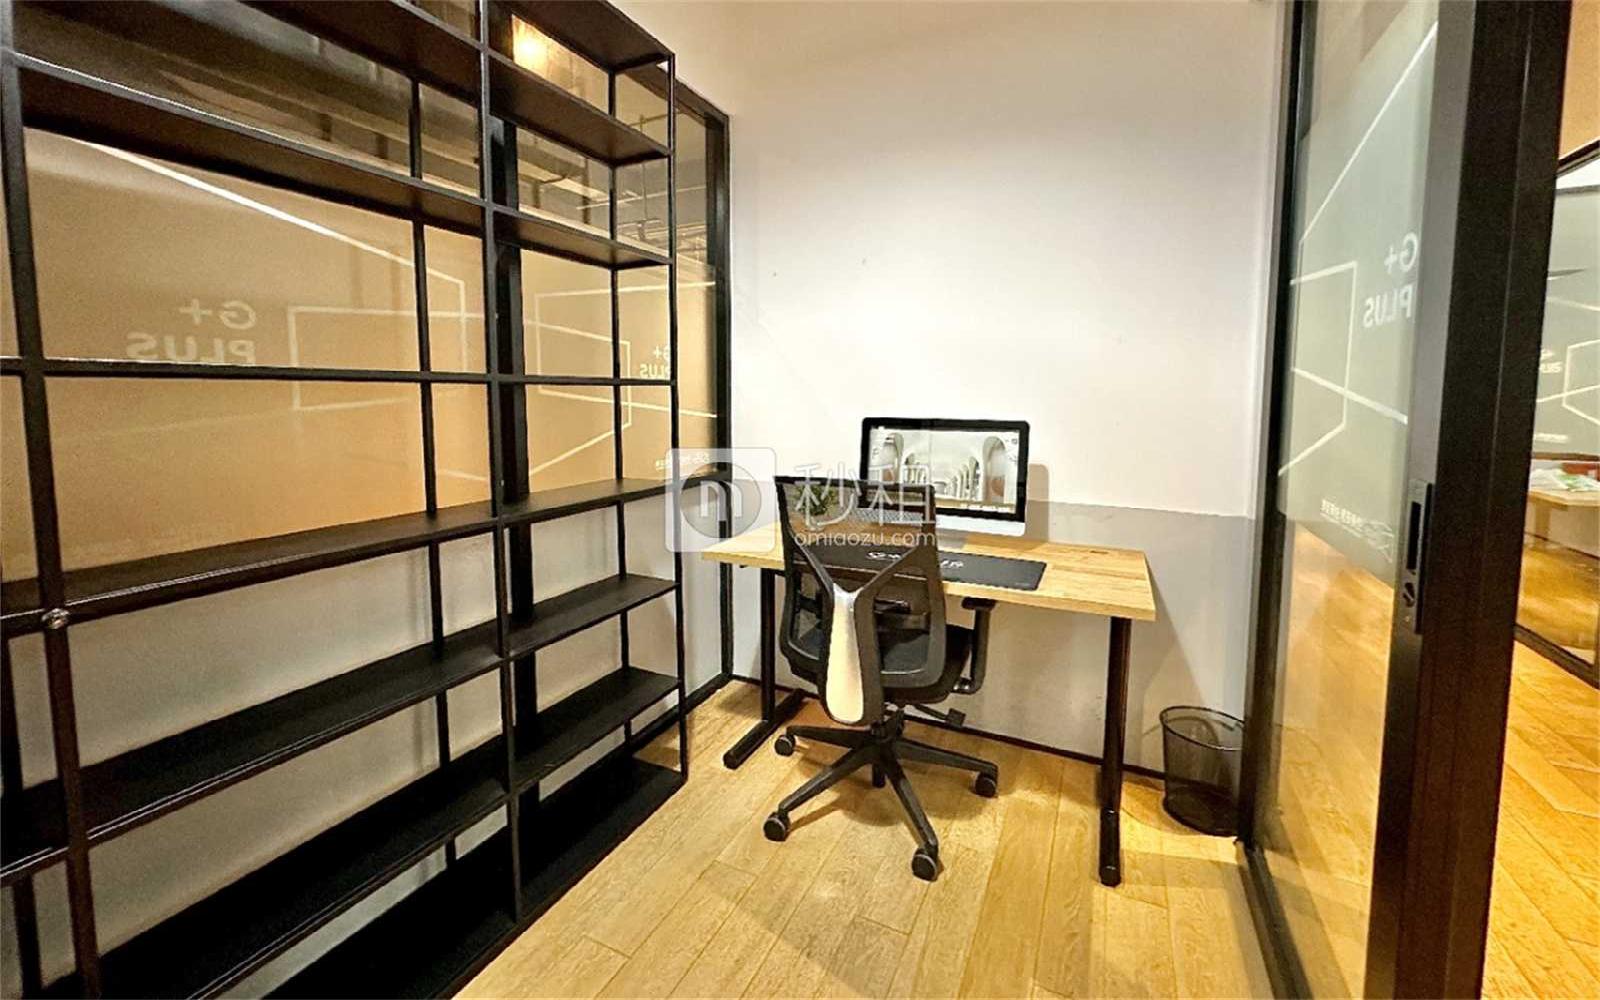 GPLUS空间际-安姆特大厦写字楼出租8平米精装办公室2400元/间.月